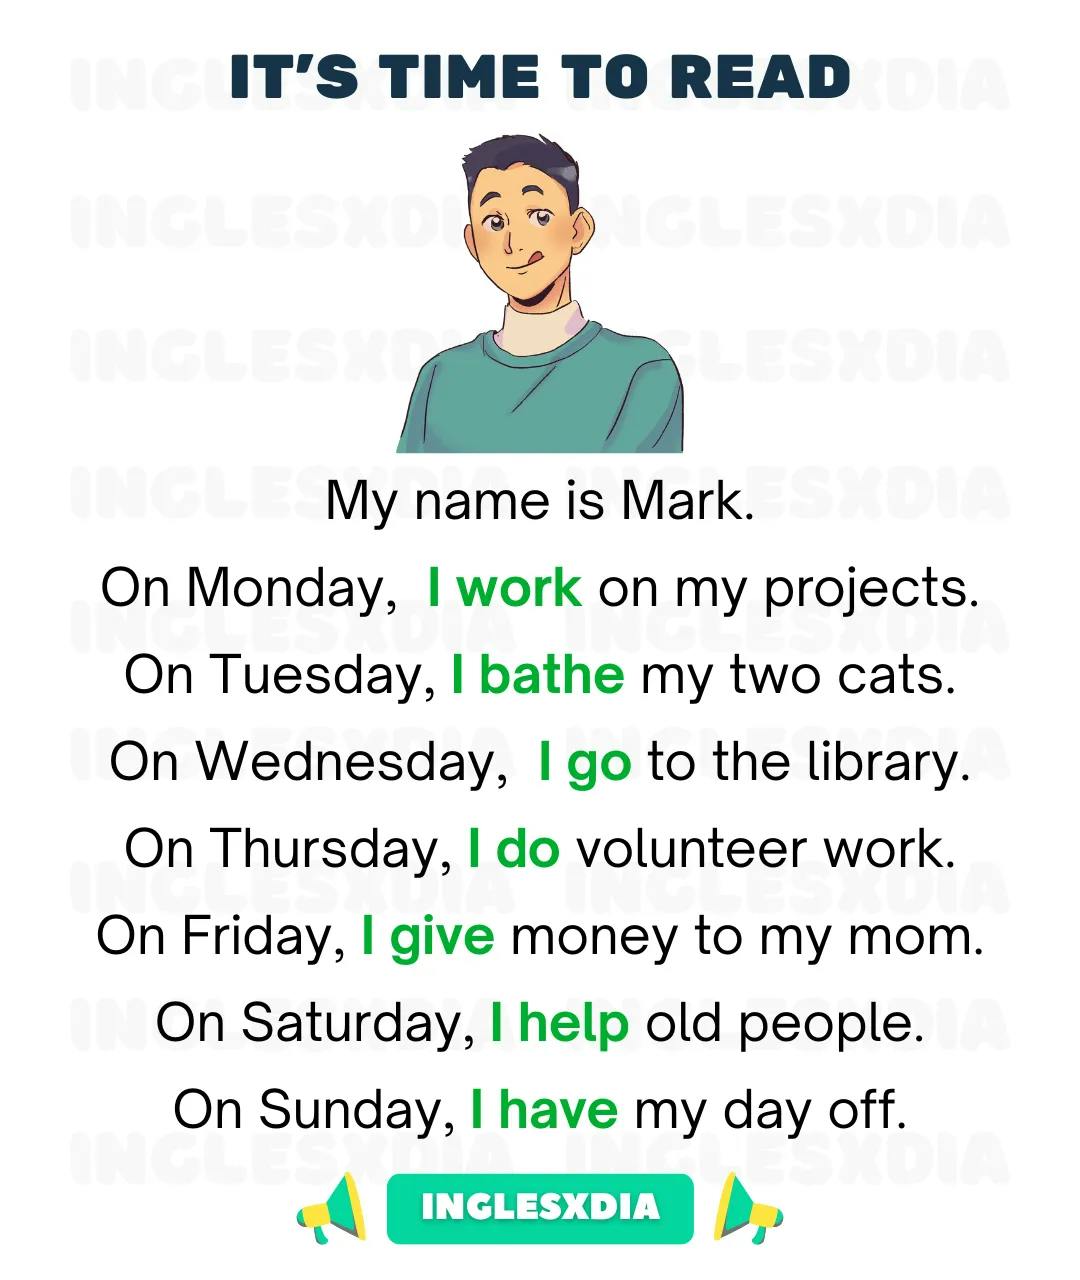 Mark's routine